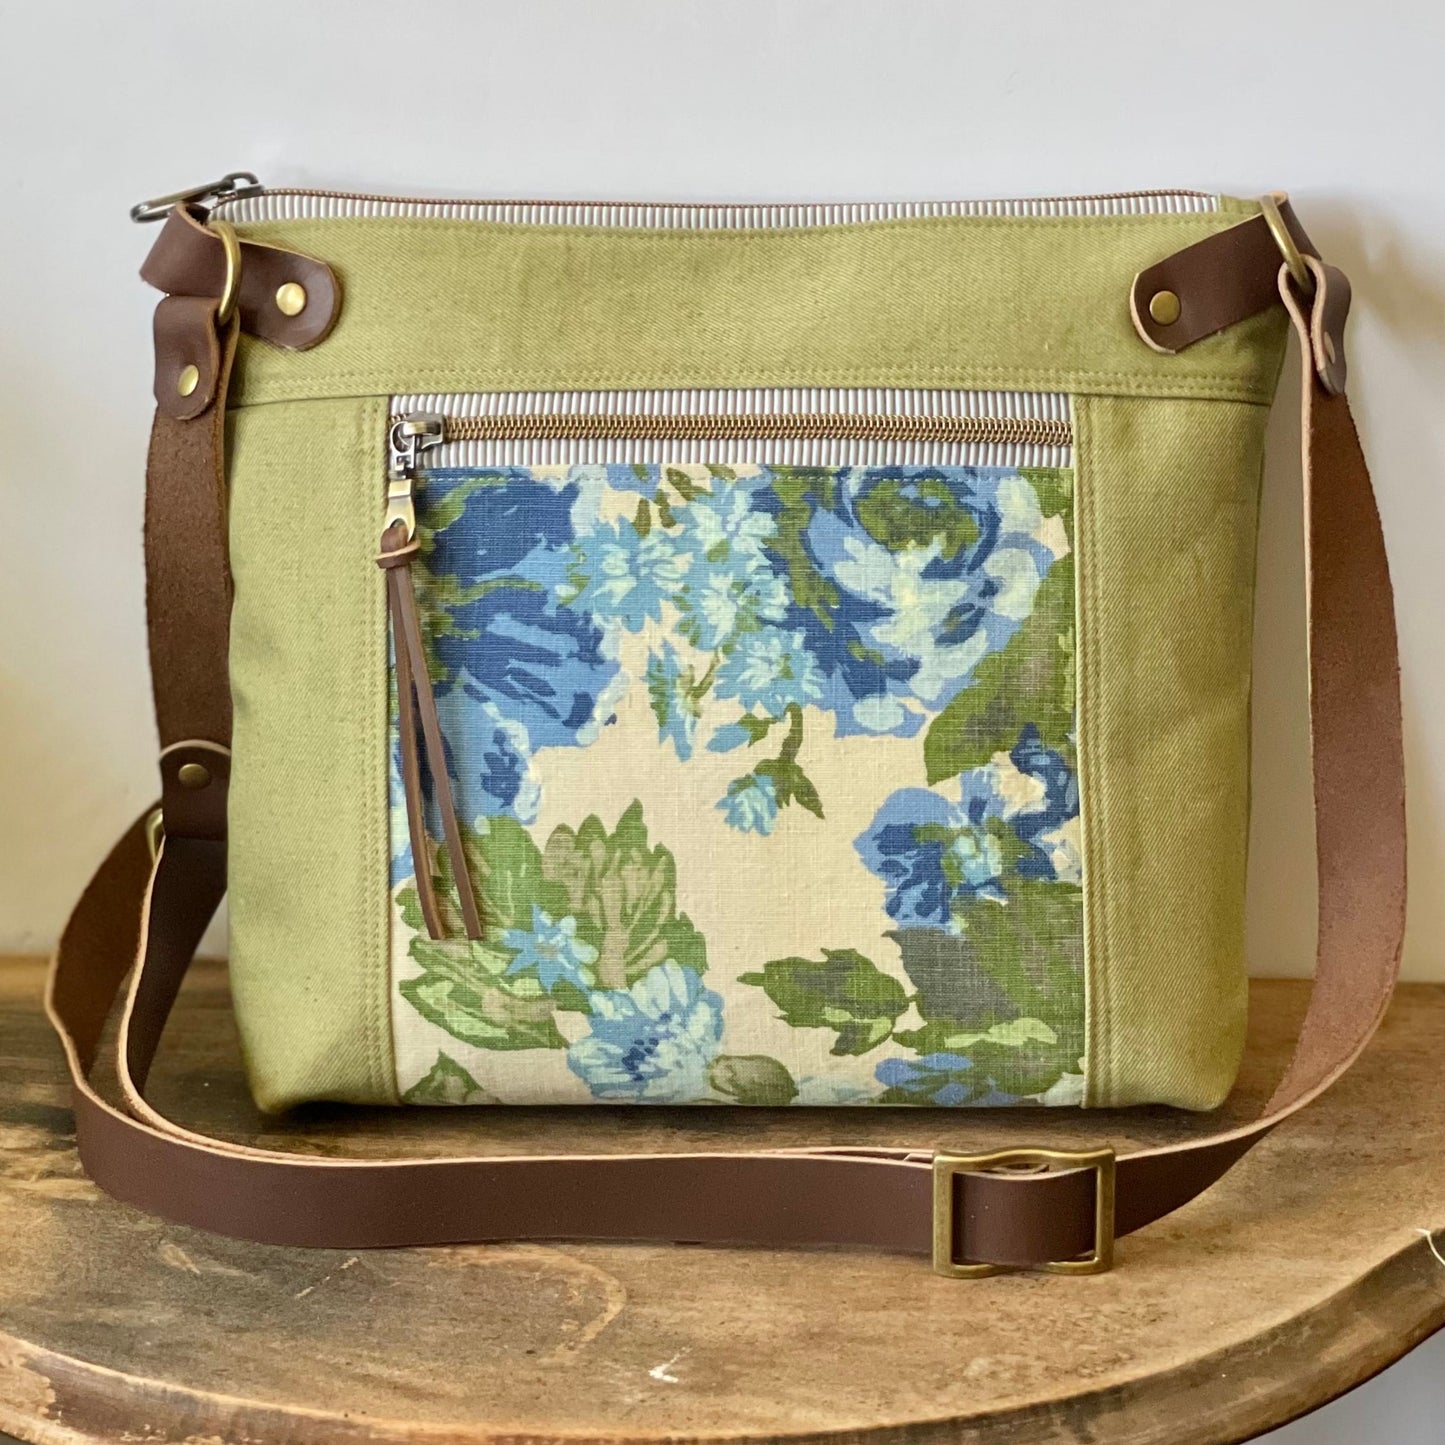 Vintage Floral Crossbody Bag